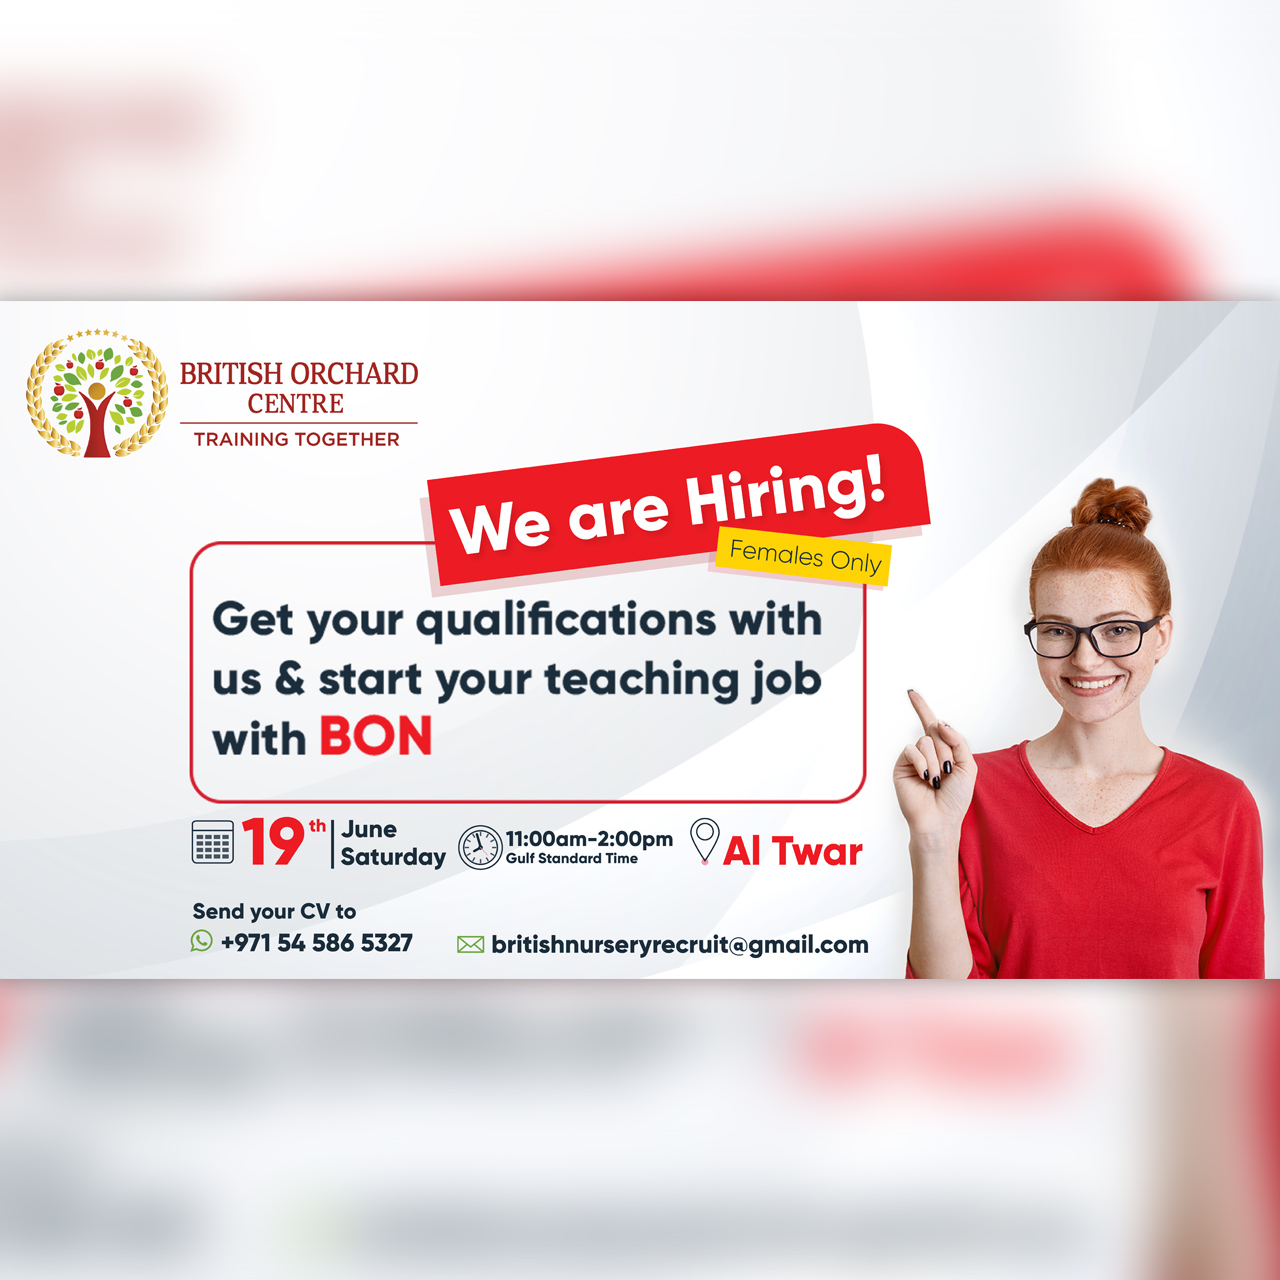 Recruitment Fair - We are hiring!  